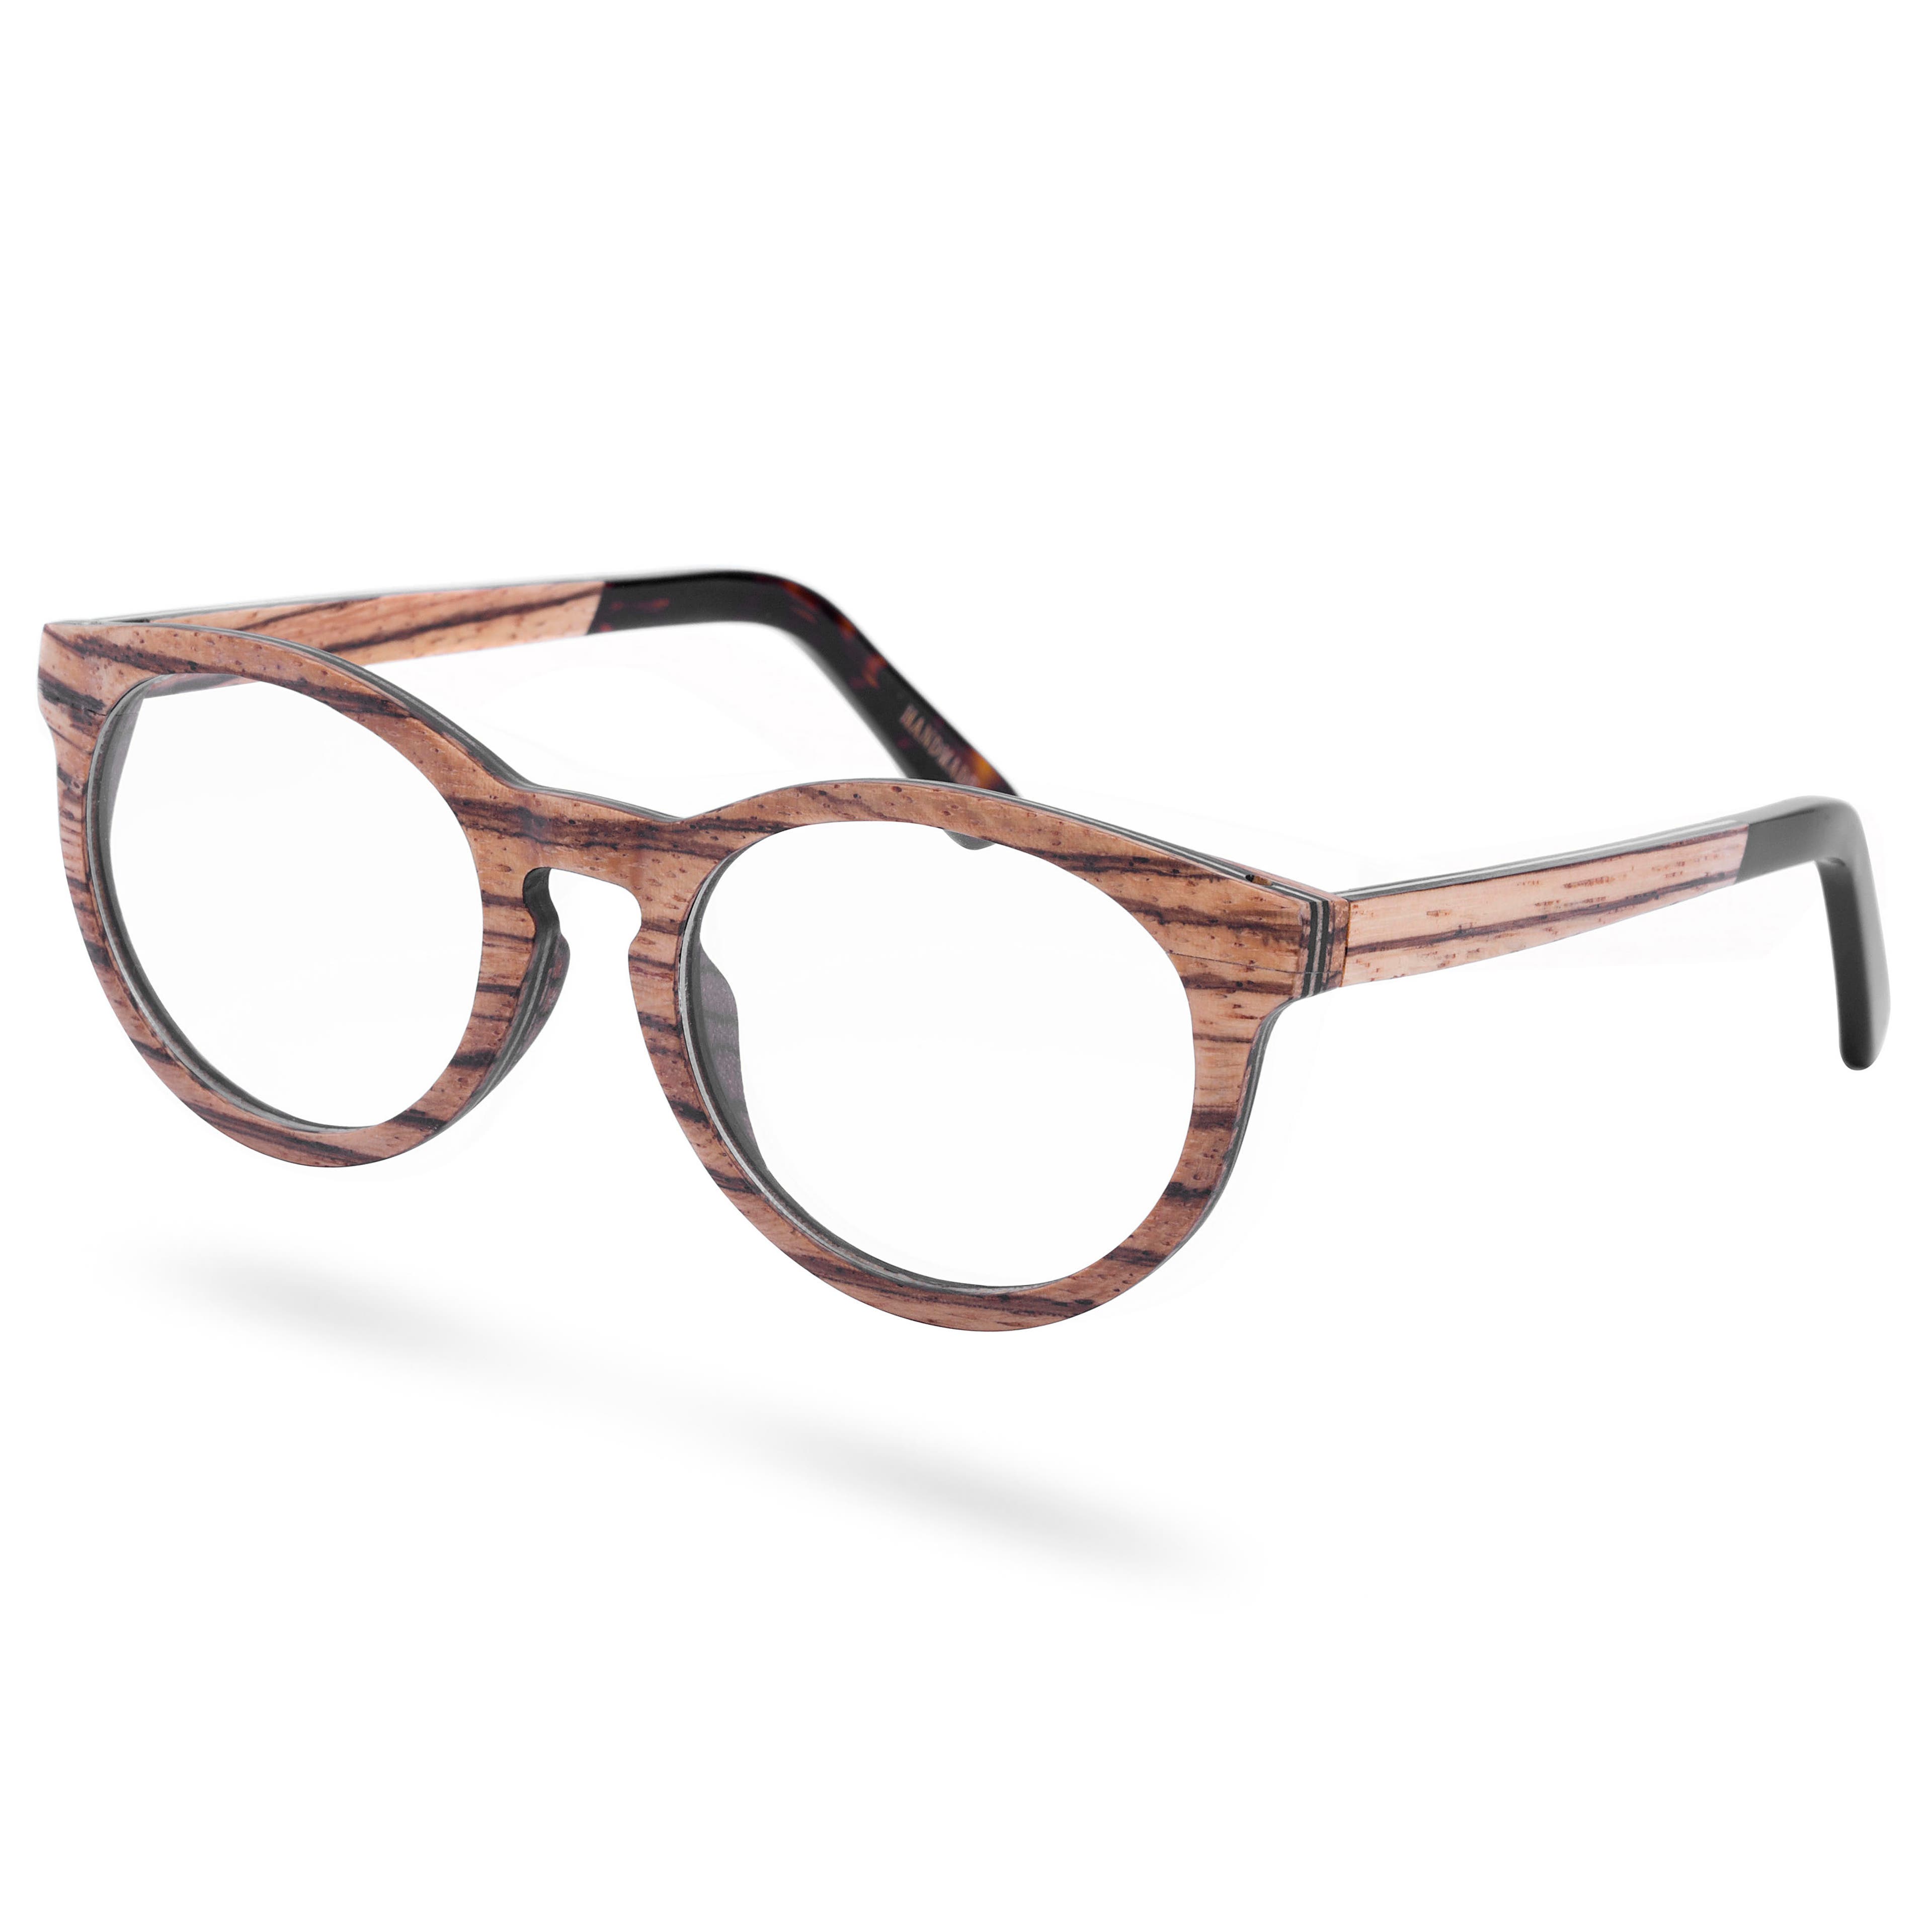 Clear Tortoise & Wood Framed Glasses